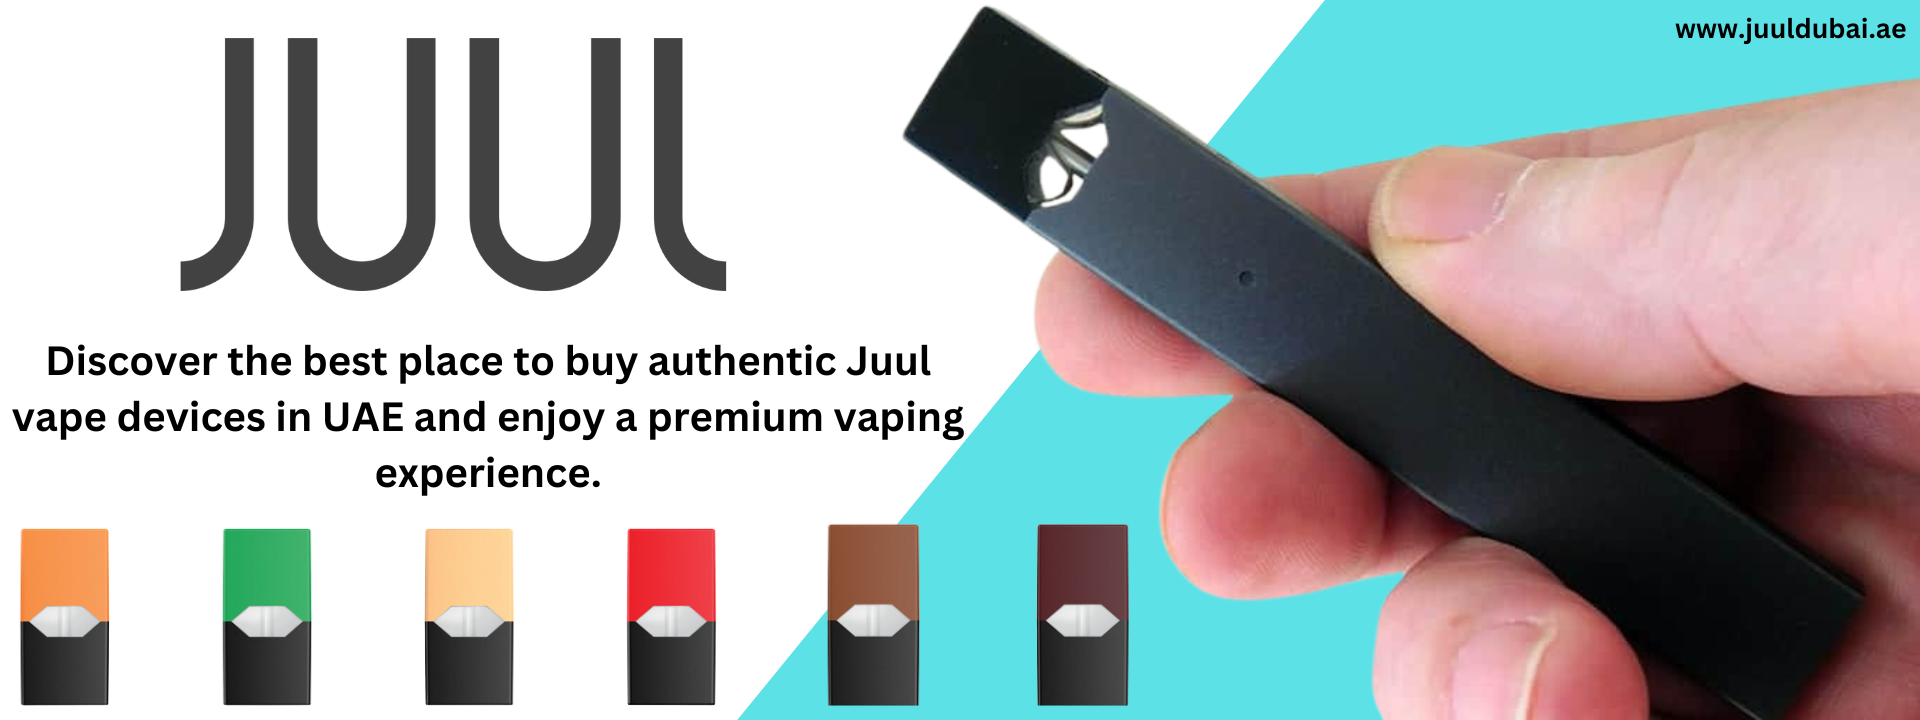 JUUL device kit in Dubai